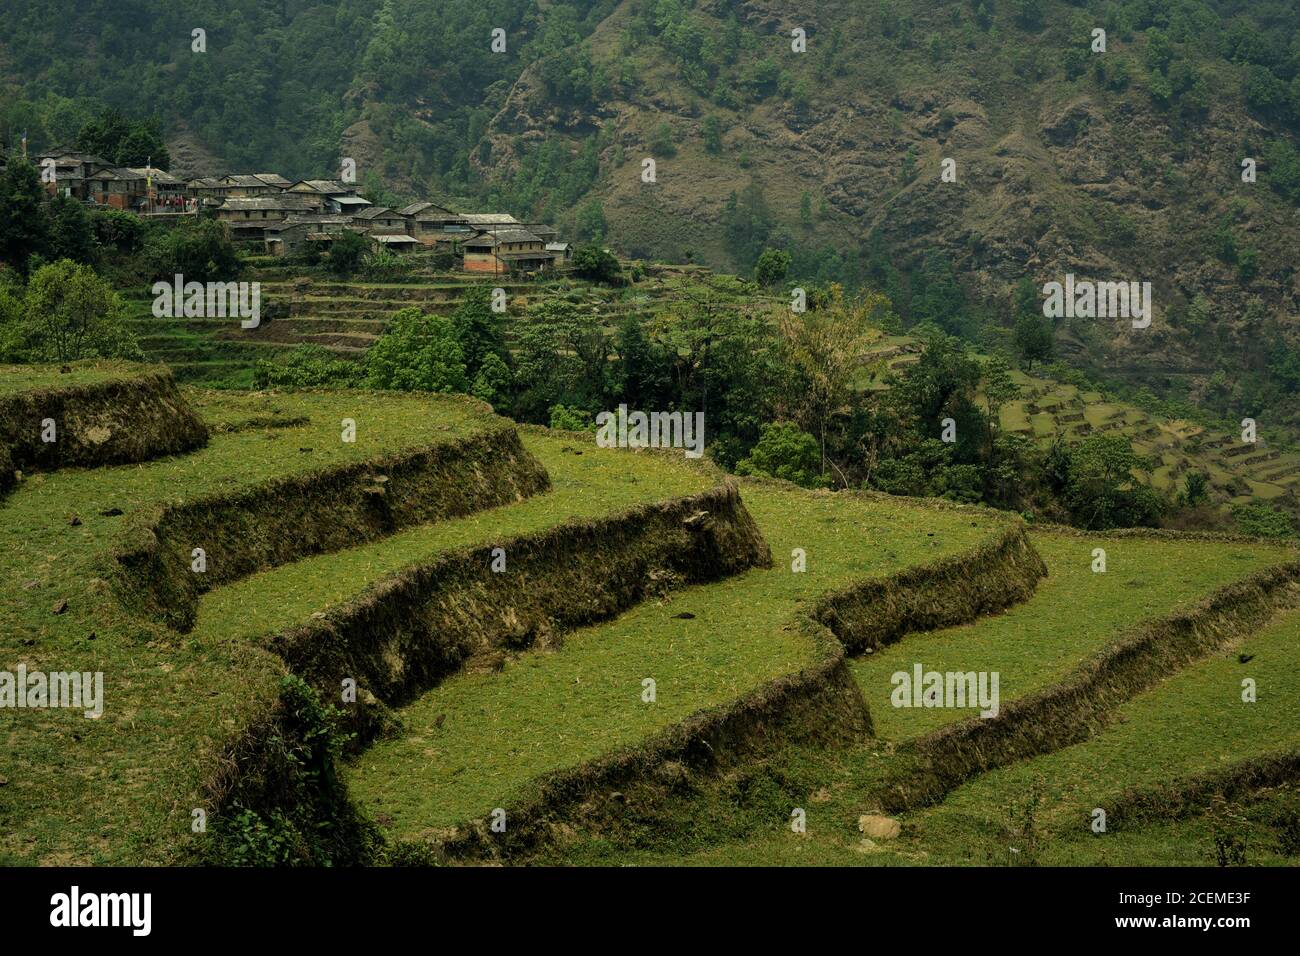 Paesaggio del villaggio agricolo di Sidhane in Kaski, provincia di Gandaki Pradesh, Nepal, dove la comunità gestisce anche ecoturismo. Foto Stock